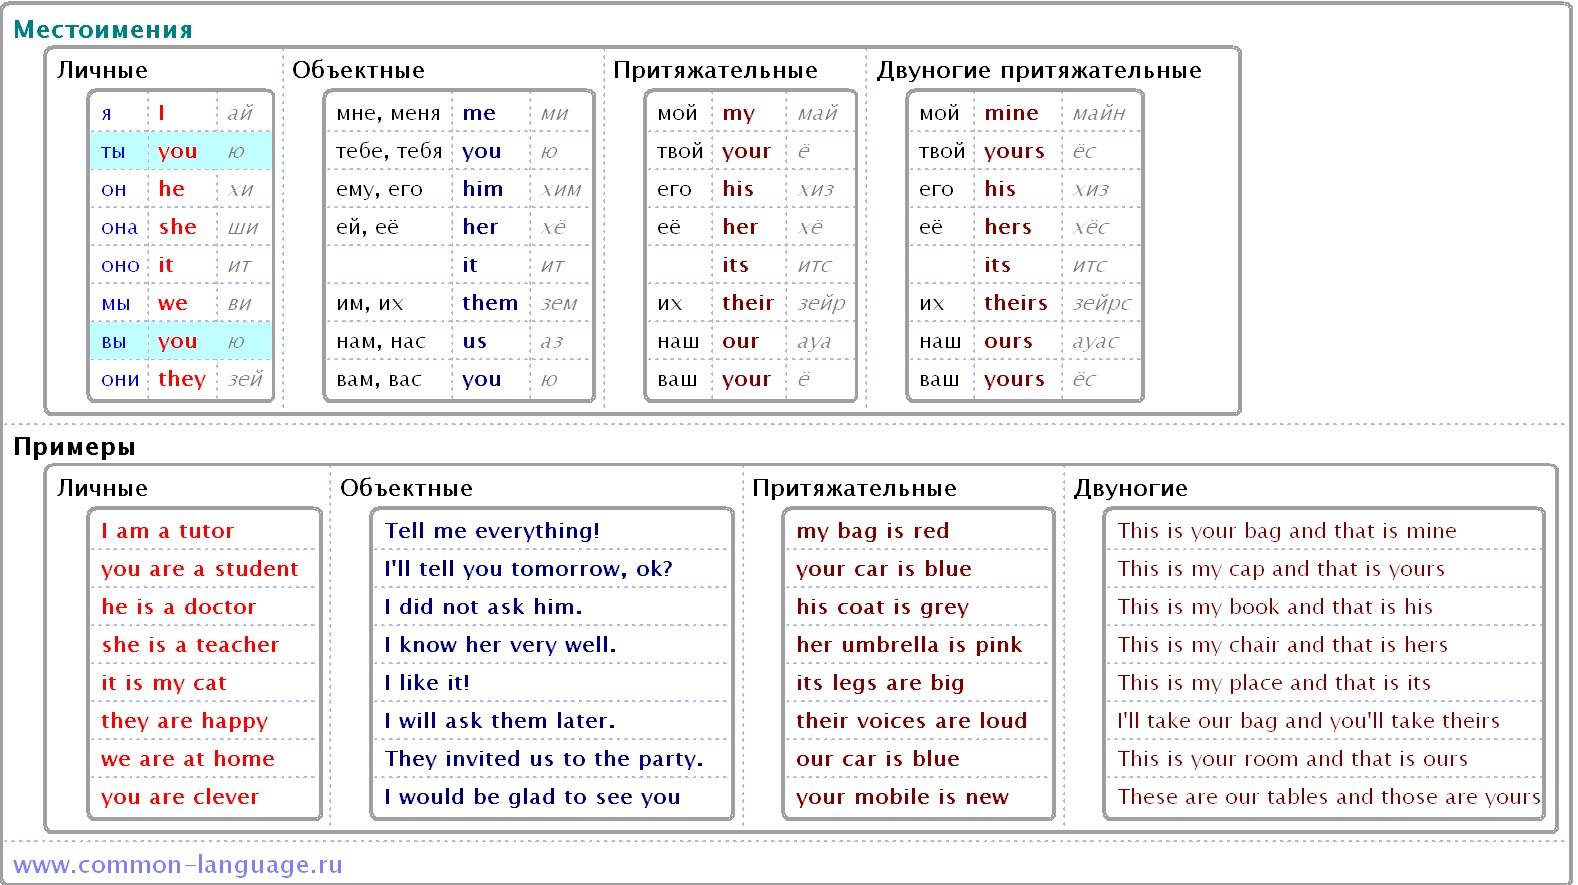 Местоимения в английском языке: виды, таблица с переводом